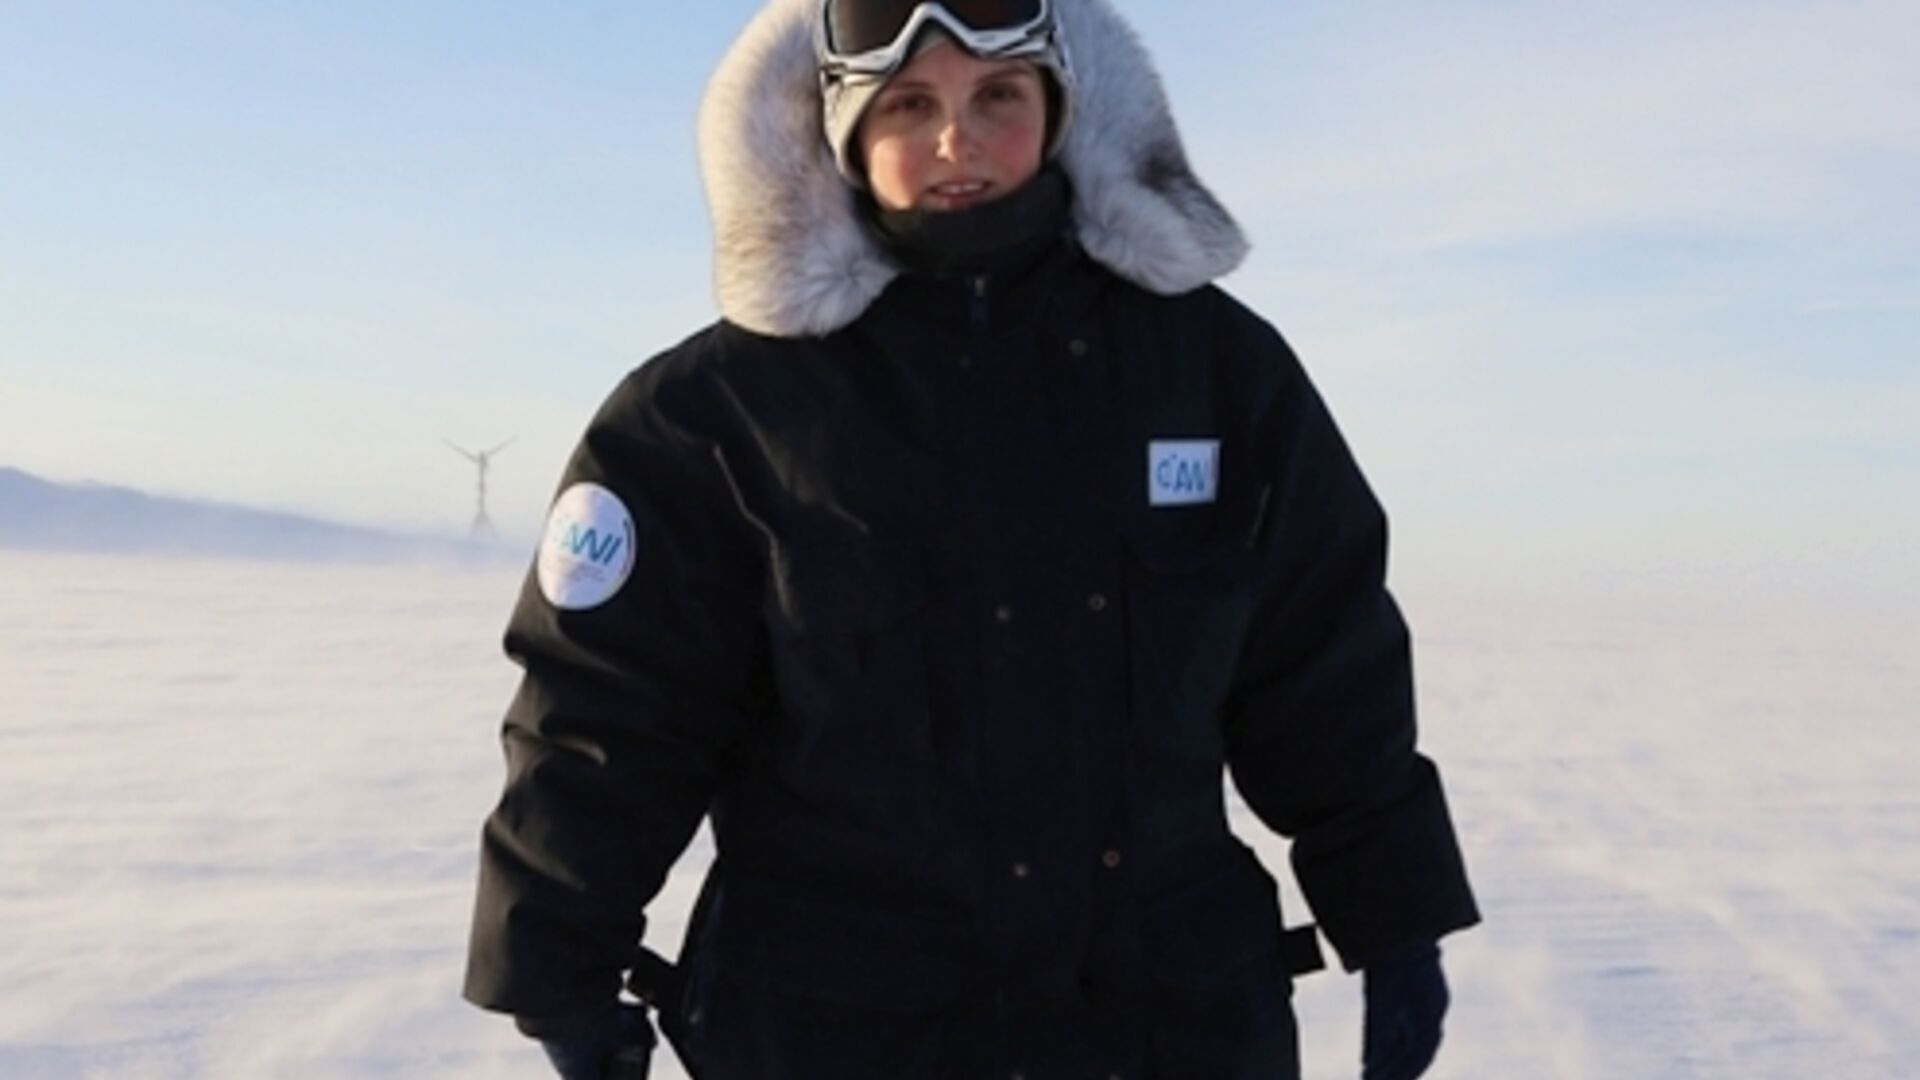 Εργασία πεδίου για πλαστικά: Η Elke Ludewig, ερευνήτρια της Αρκτικής και επικεφαλής του παρατηρητηρίου στο βουνό Hoher Sonnblick, συνέλεξε τα νανοπλαστικά δείγματα μαζί με την ομάδα της: Η ταλαντούχα ερευνήτρια εργαζόταν στο παρελθόν στον ερευνητικό σταθμό German Polaris στην Ανταρκτική